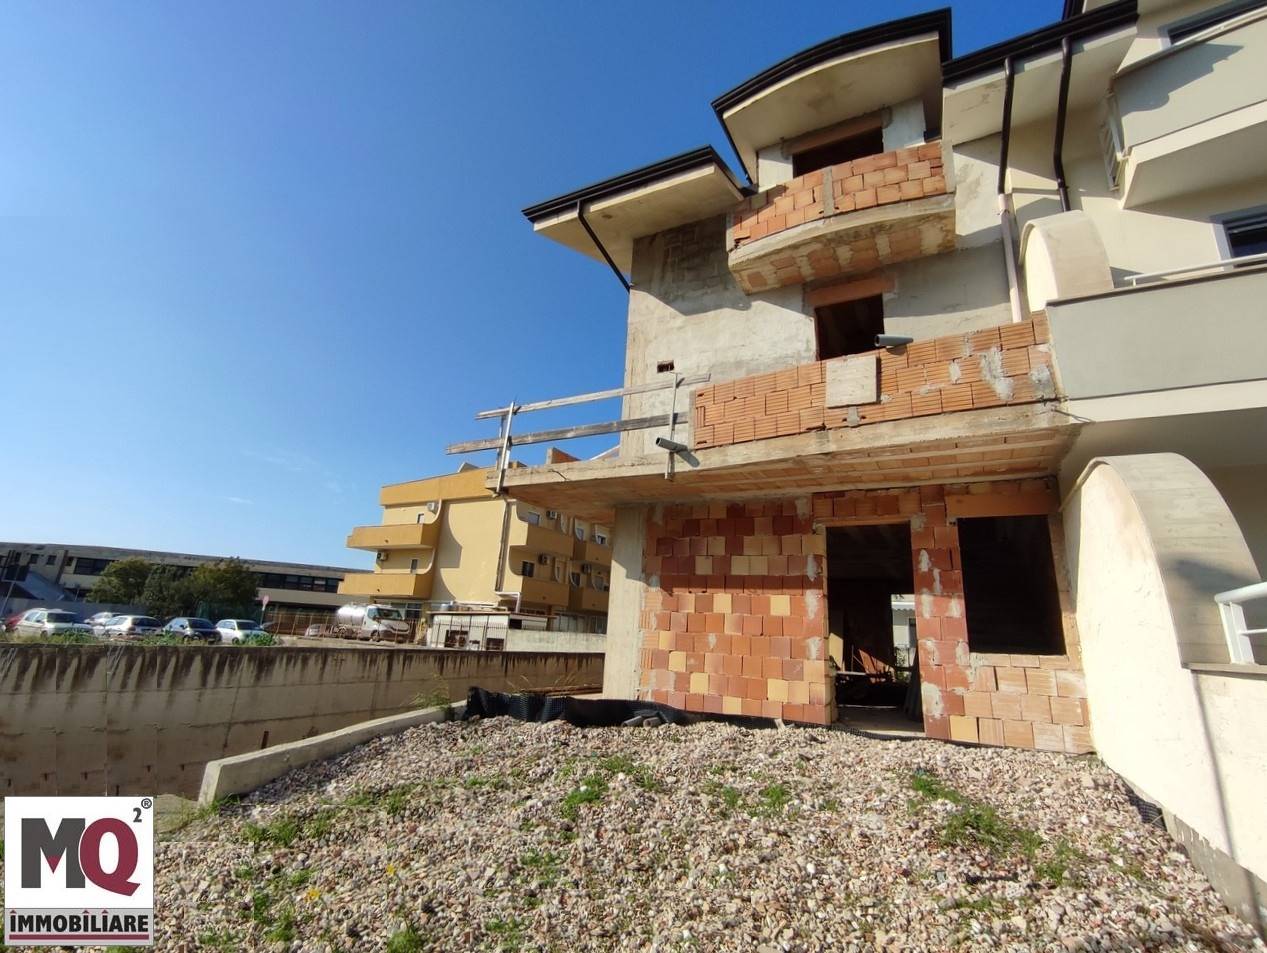 Villa in vendita a Mondragone, 5 locali, prezzo € 170.000 | CambioCasa.it